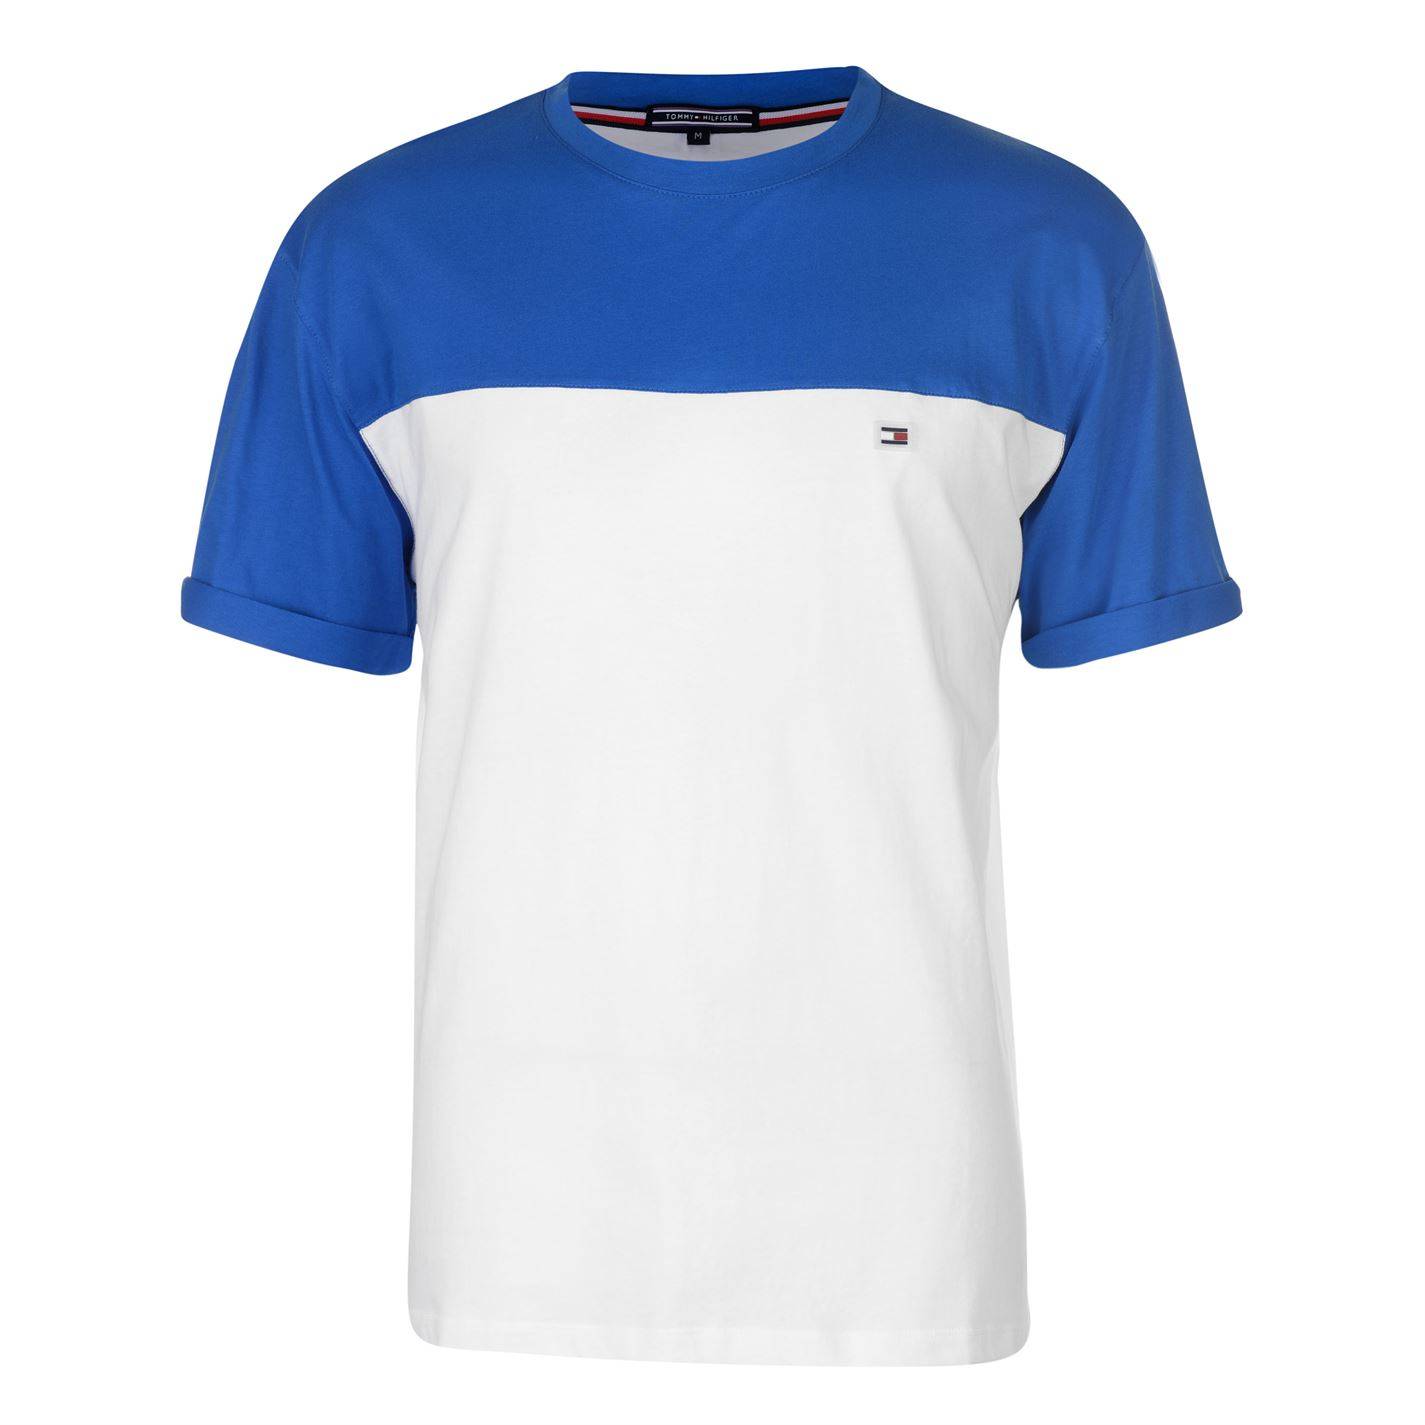 Мужская футболка Tommy Hilfiger колорблок синий-белый - купить с доставкой по России, оплата при получении